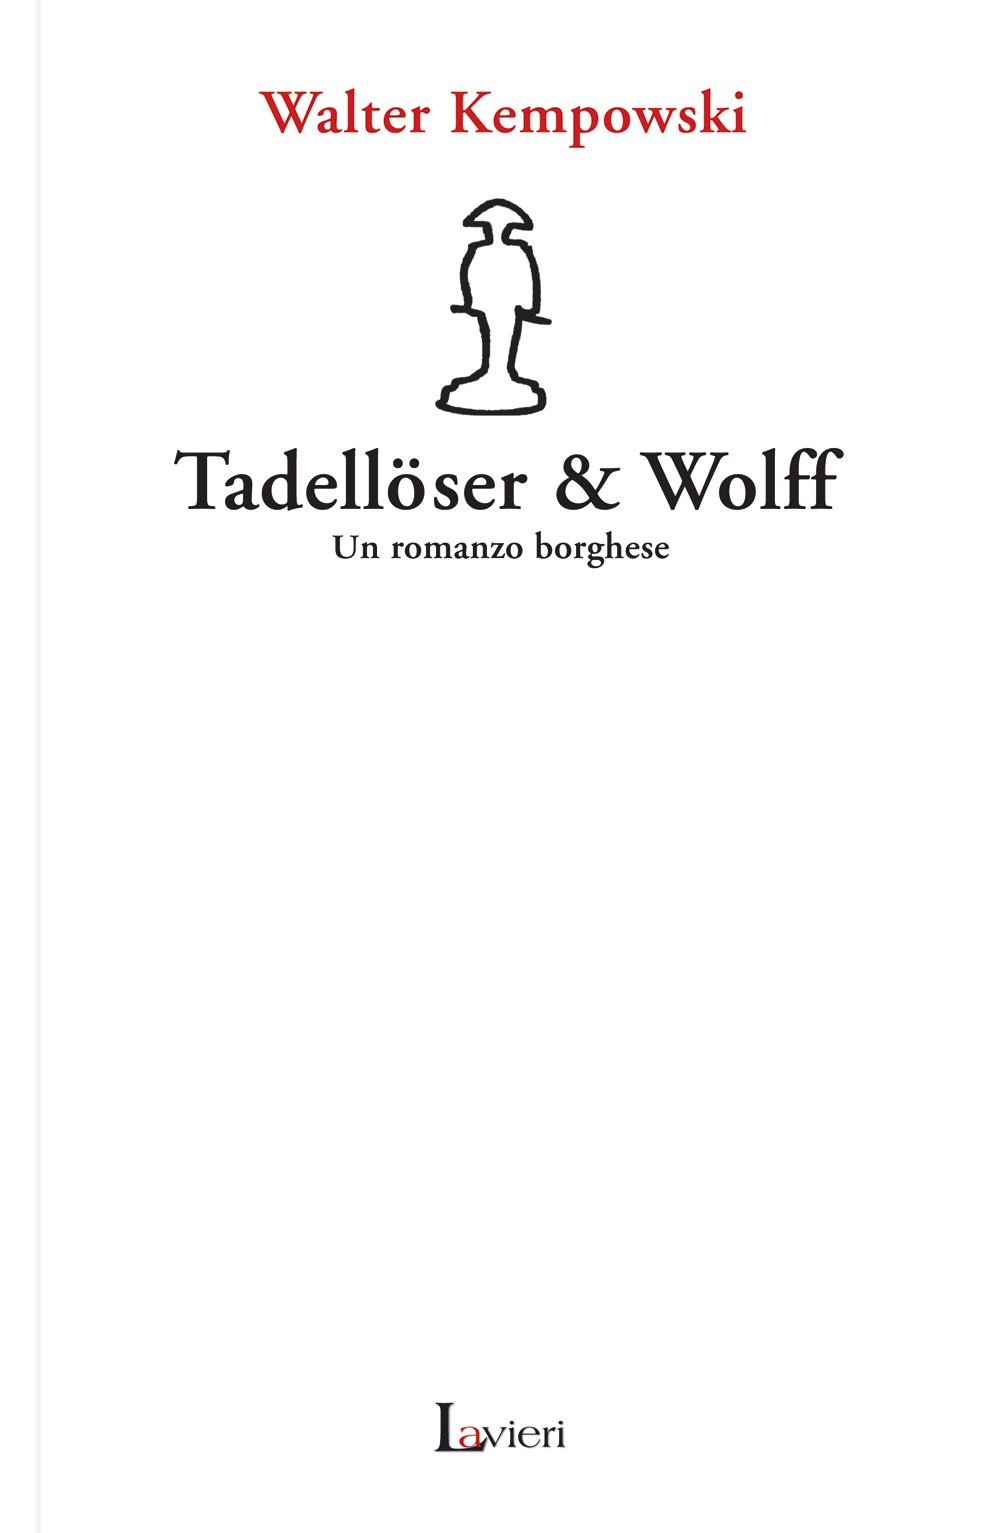 Libri Walter Kempowski - Tadelloser & Wolff. Un Romanzo Borghese NUOVO SIGILLATO, EDIZIONE DEL 01/09/2007 SUBITO DISPONIBILE